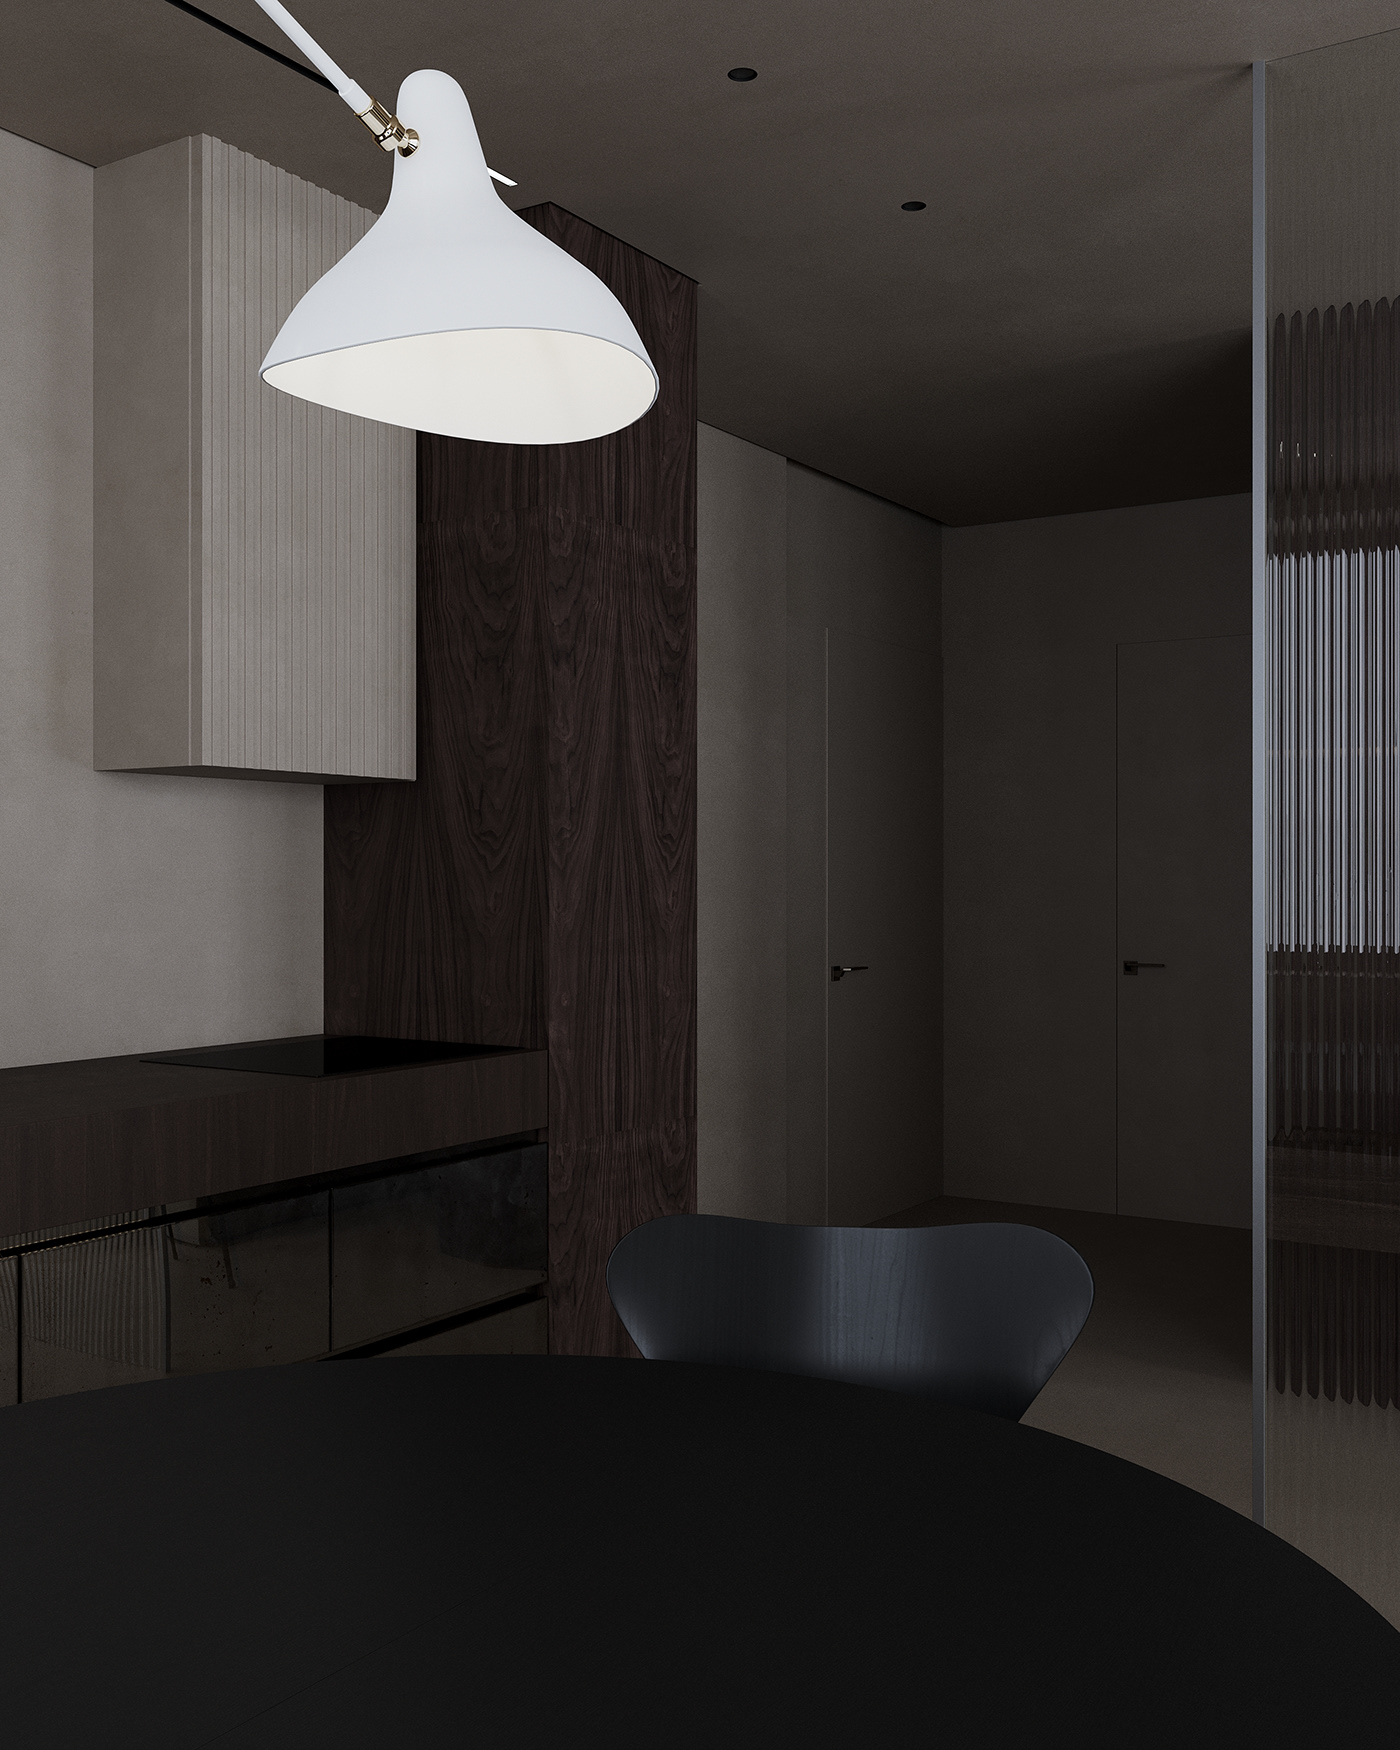 Minimalism Визуализация интерьера дизайн интерьера Дизайн квартиры минимализм современный стиль